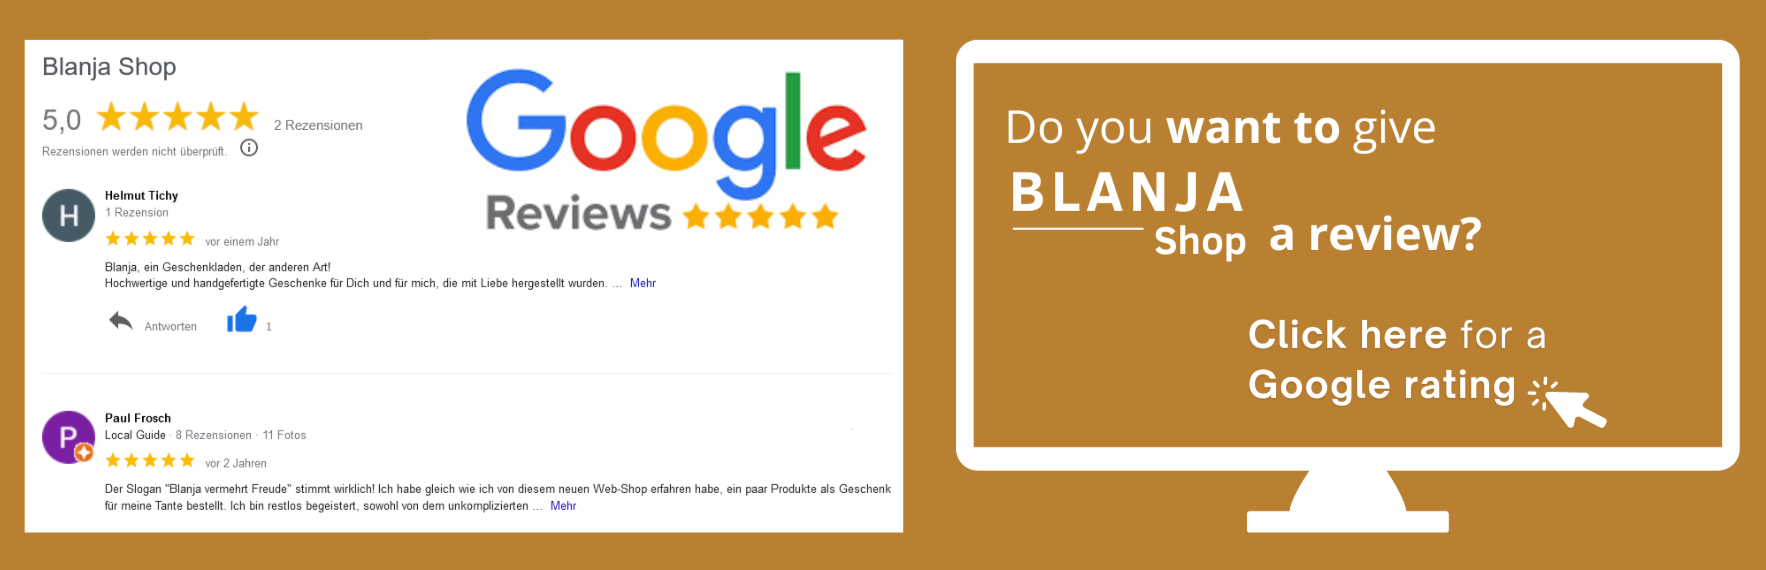 Reviews and Ratings - Blanja Shop